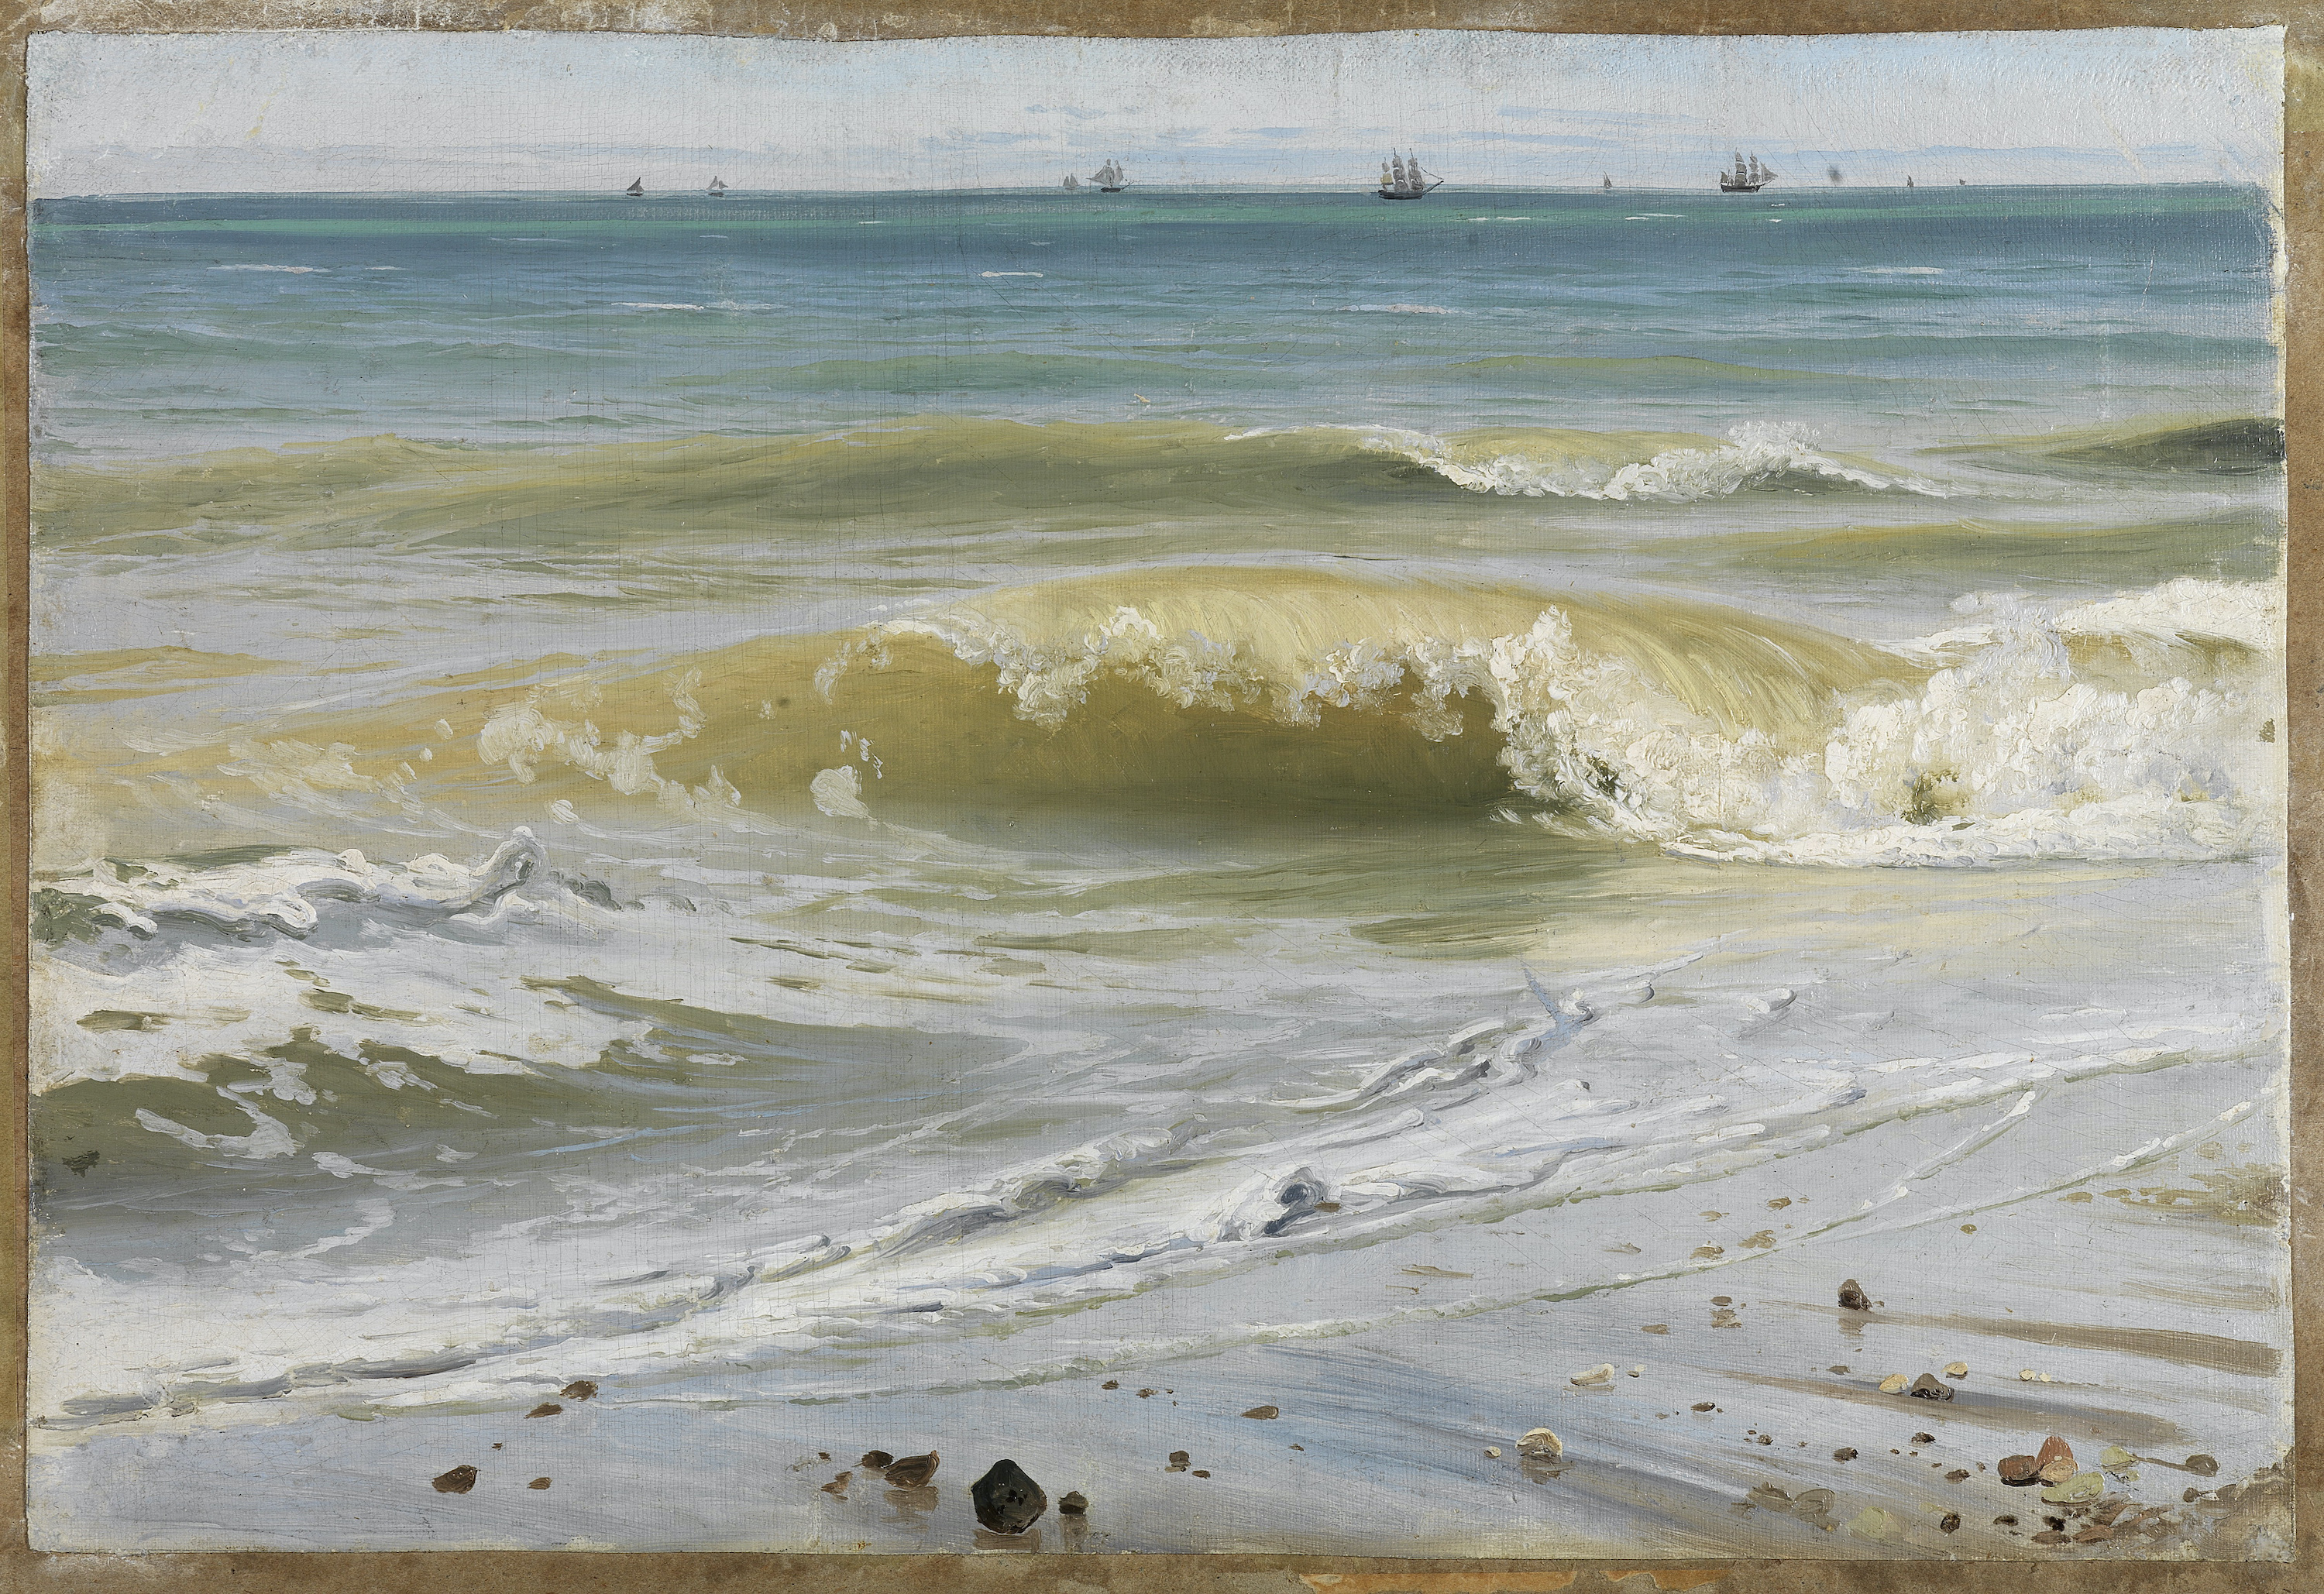 أمواج متكسرة وسفن في الأفق by Johann Wilhelm Schirmer - 1836 م - 30.5 سم في 43.4 سم 